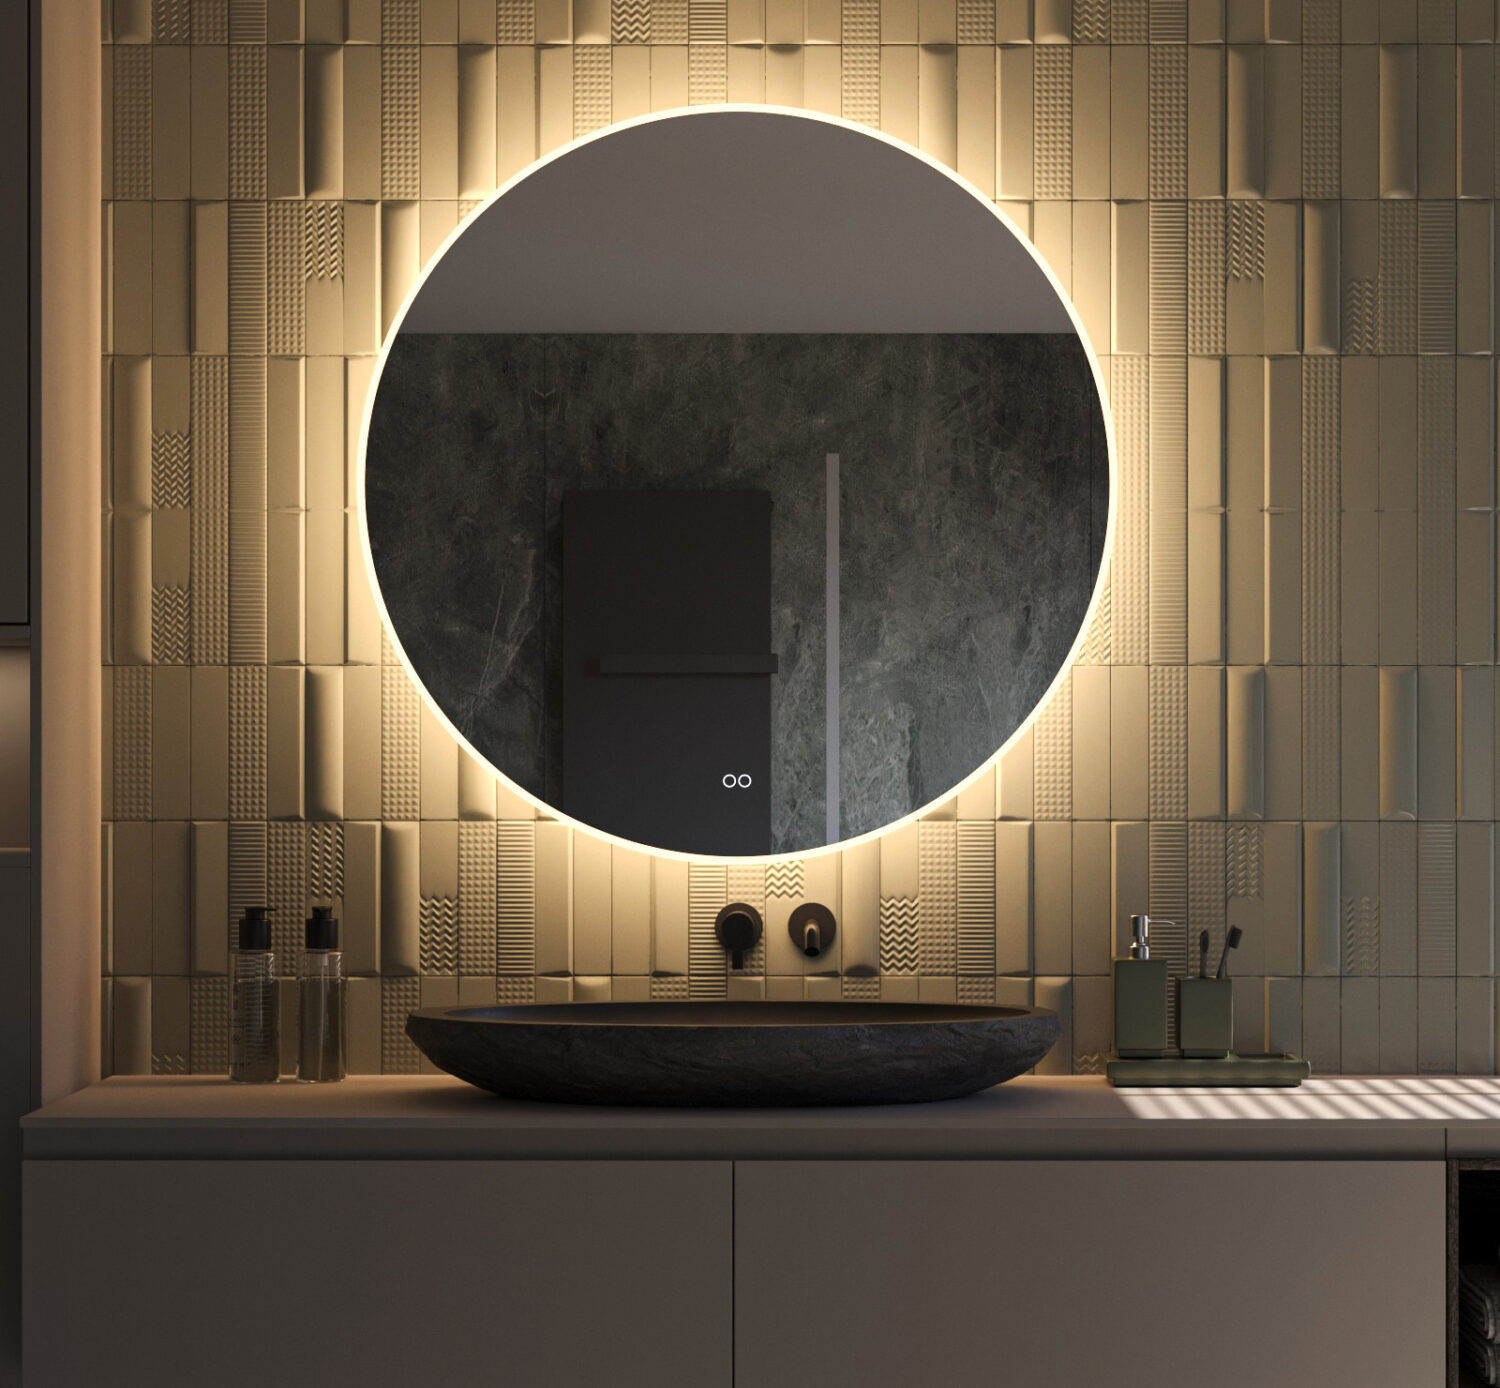 Ronde design spiegel met een diameter van 100 cm en van alle gemakken voorzien: dimbare verlichting, spiegelverwarming en instelbare lichtkleur